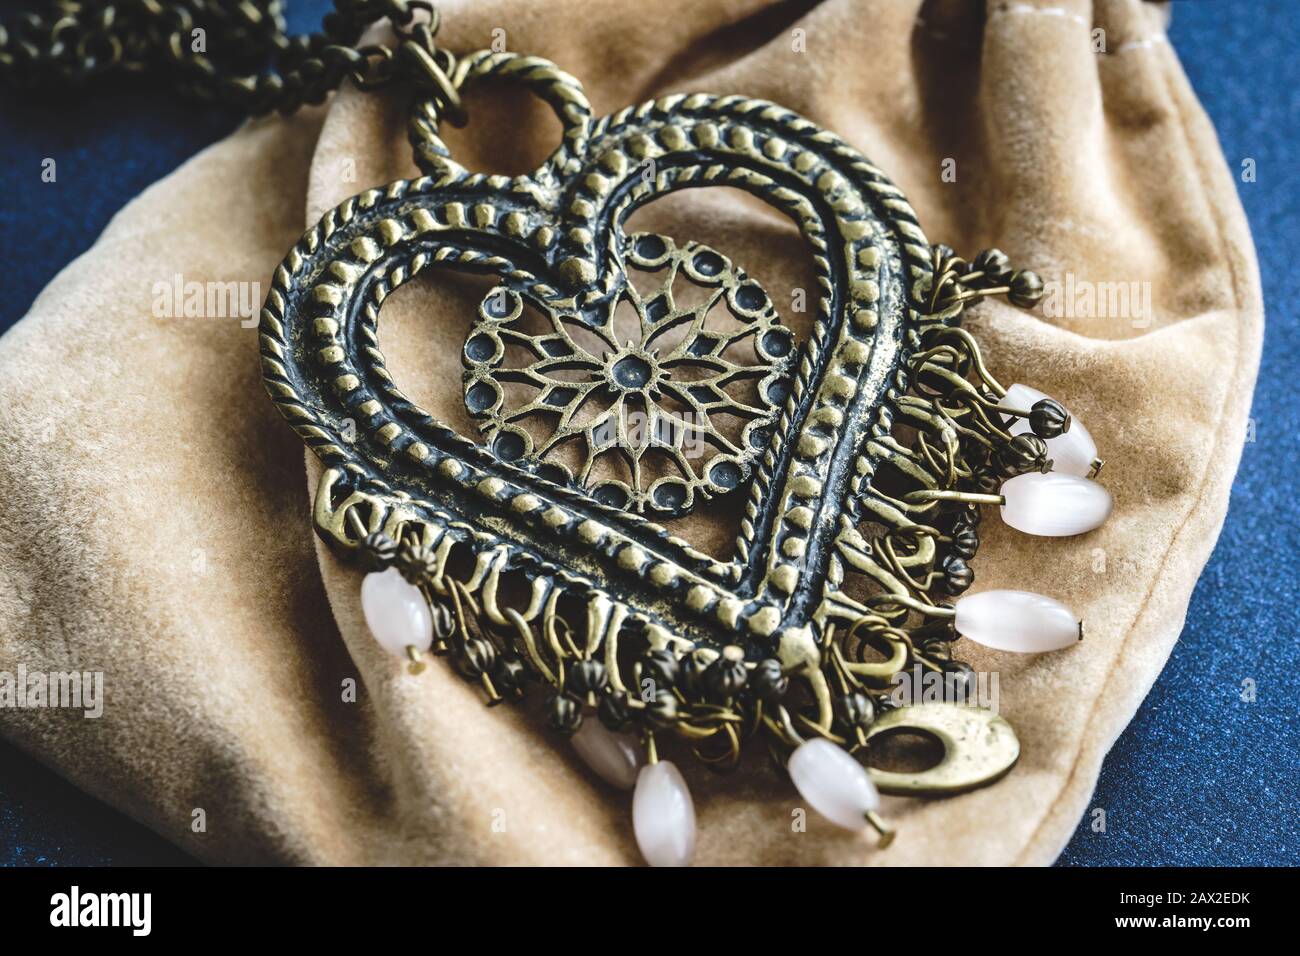 Ethnic boho style heart pendant with white beads Stock Photo